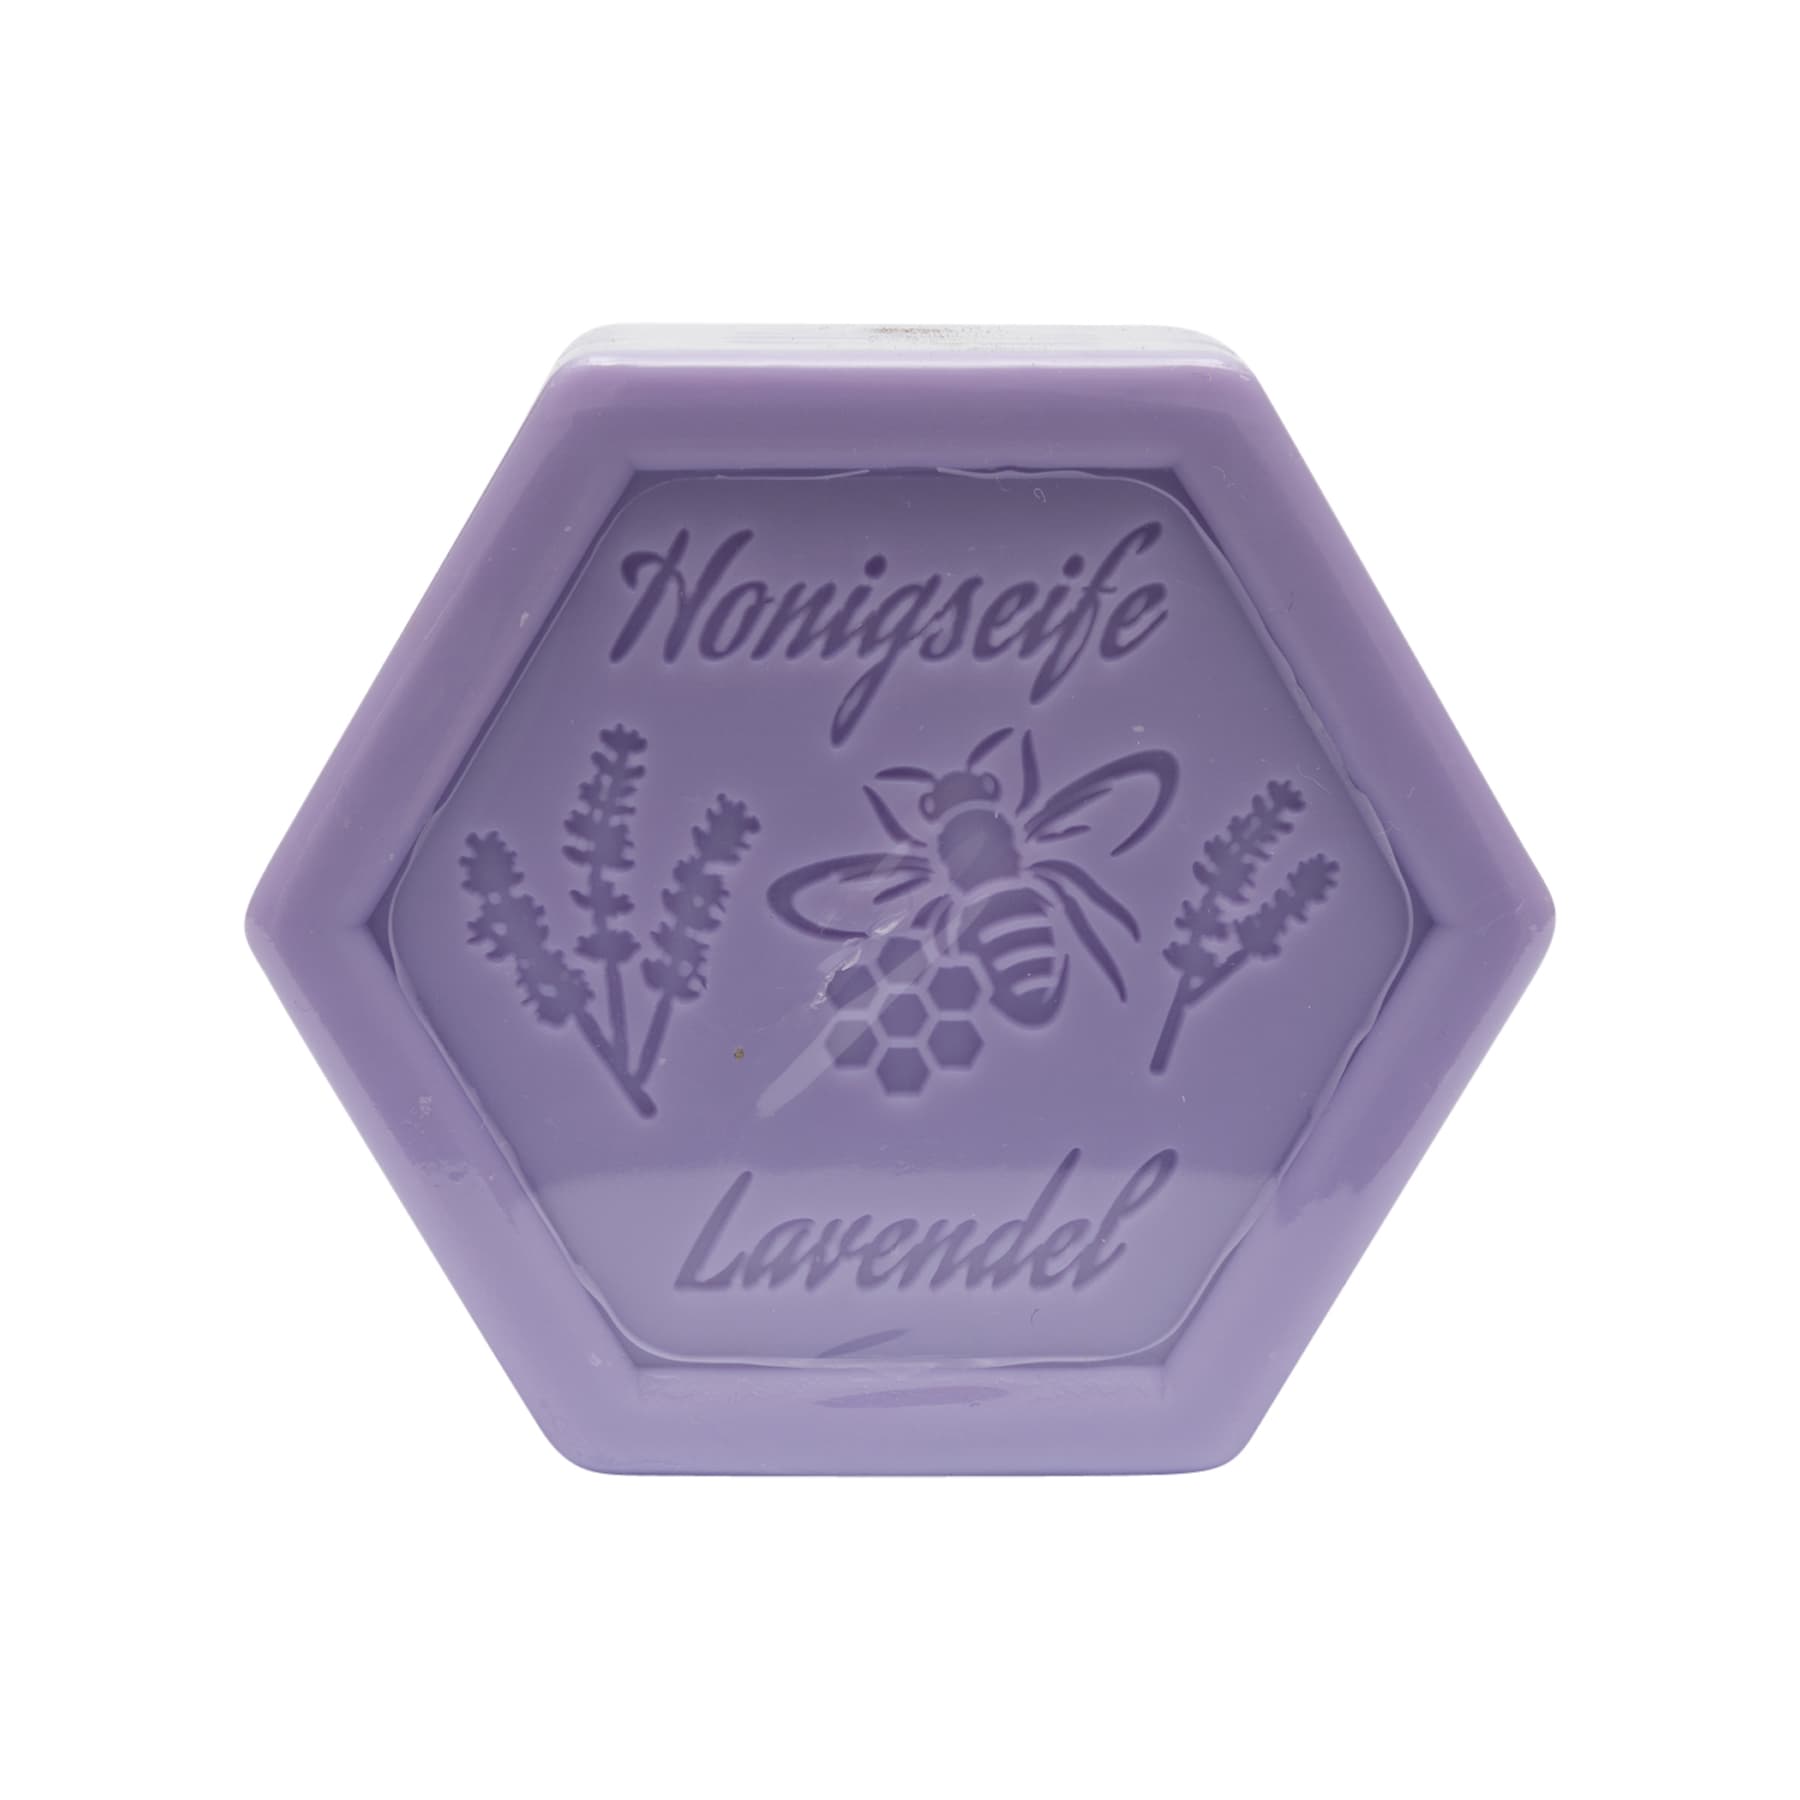 Honigseife mit Lavendel 100 g in Sechseckform, foliert, mit dem beigelegten Etikett